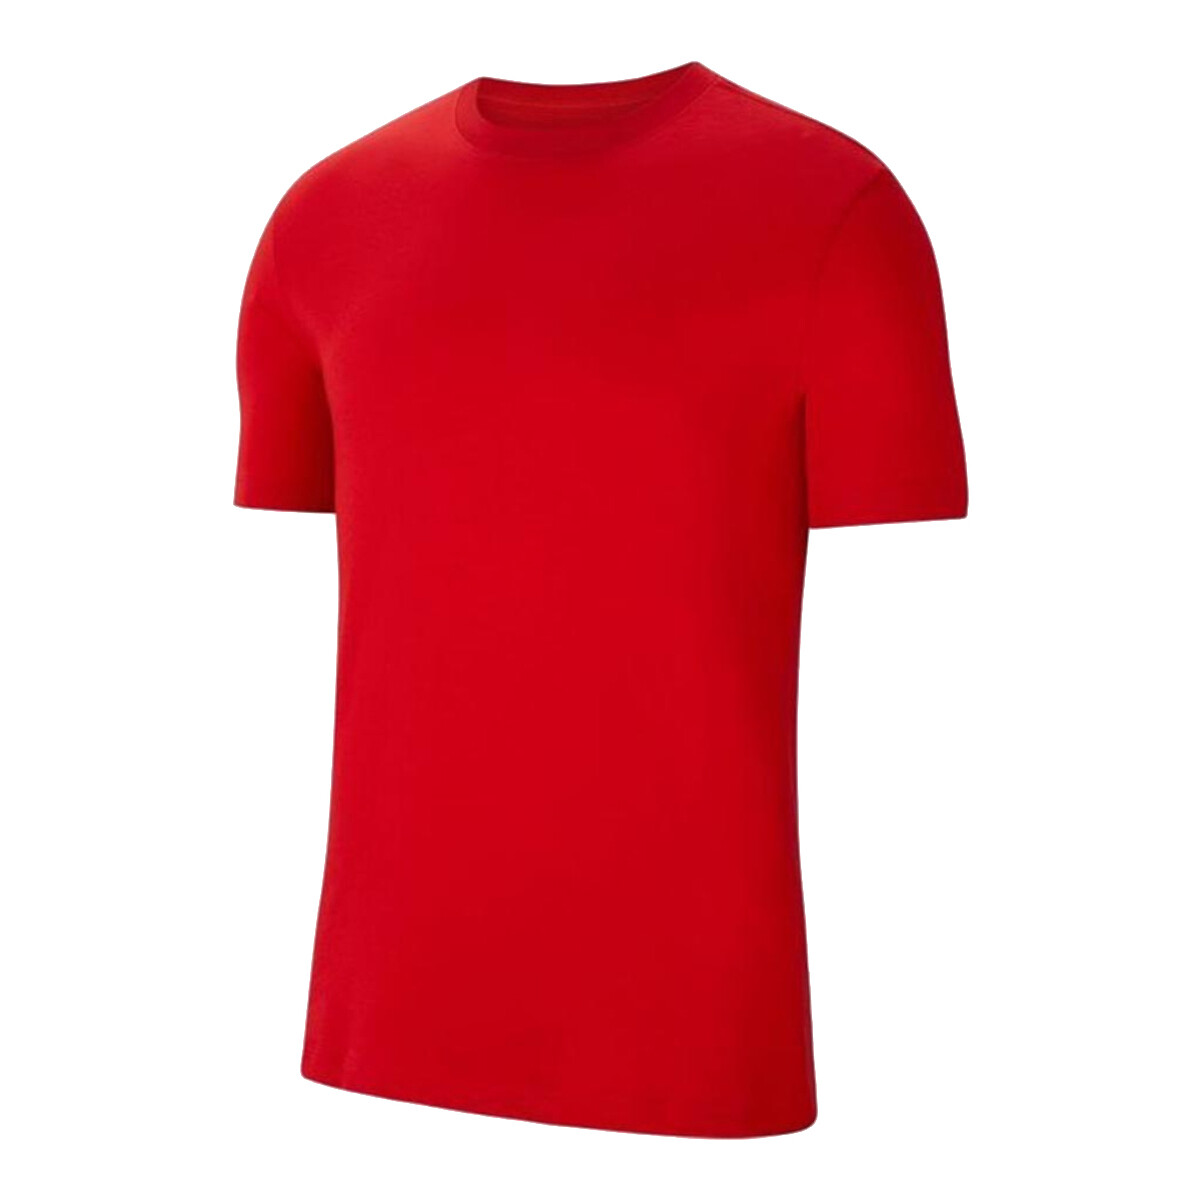 Textil Homem T-Shirt mangas curtas Nike Park 20 M Tee Vermelho